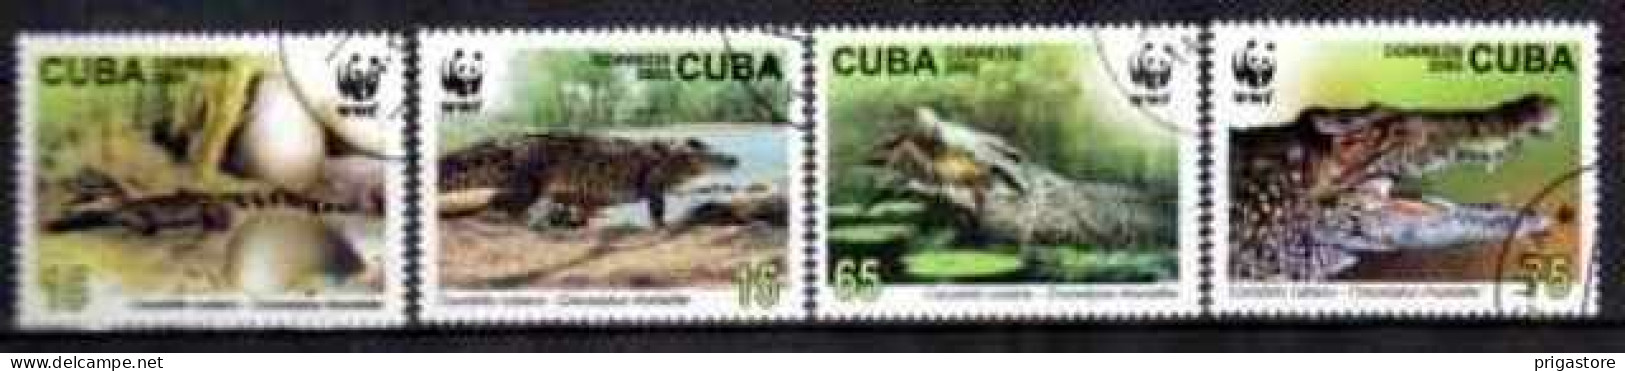 Cuba 2003 Animaux Crocodiles (19) Yvert N° 4117 à 4120 Oblitéré Used - Gebraucht